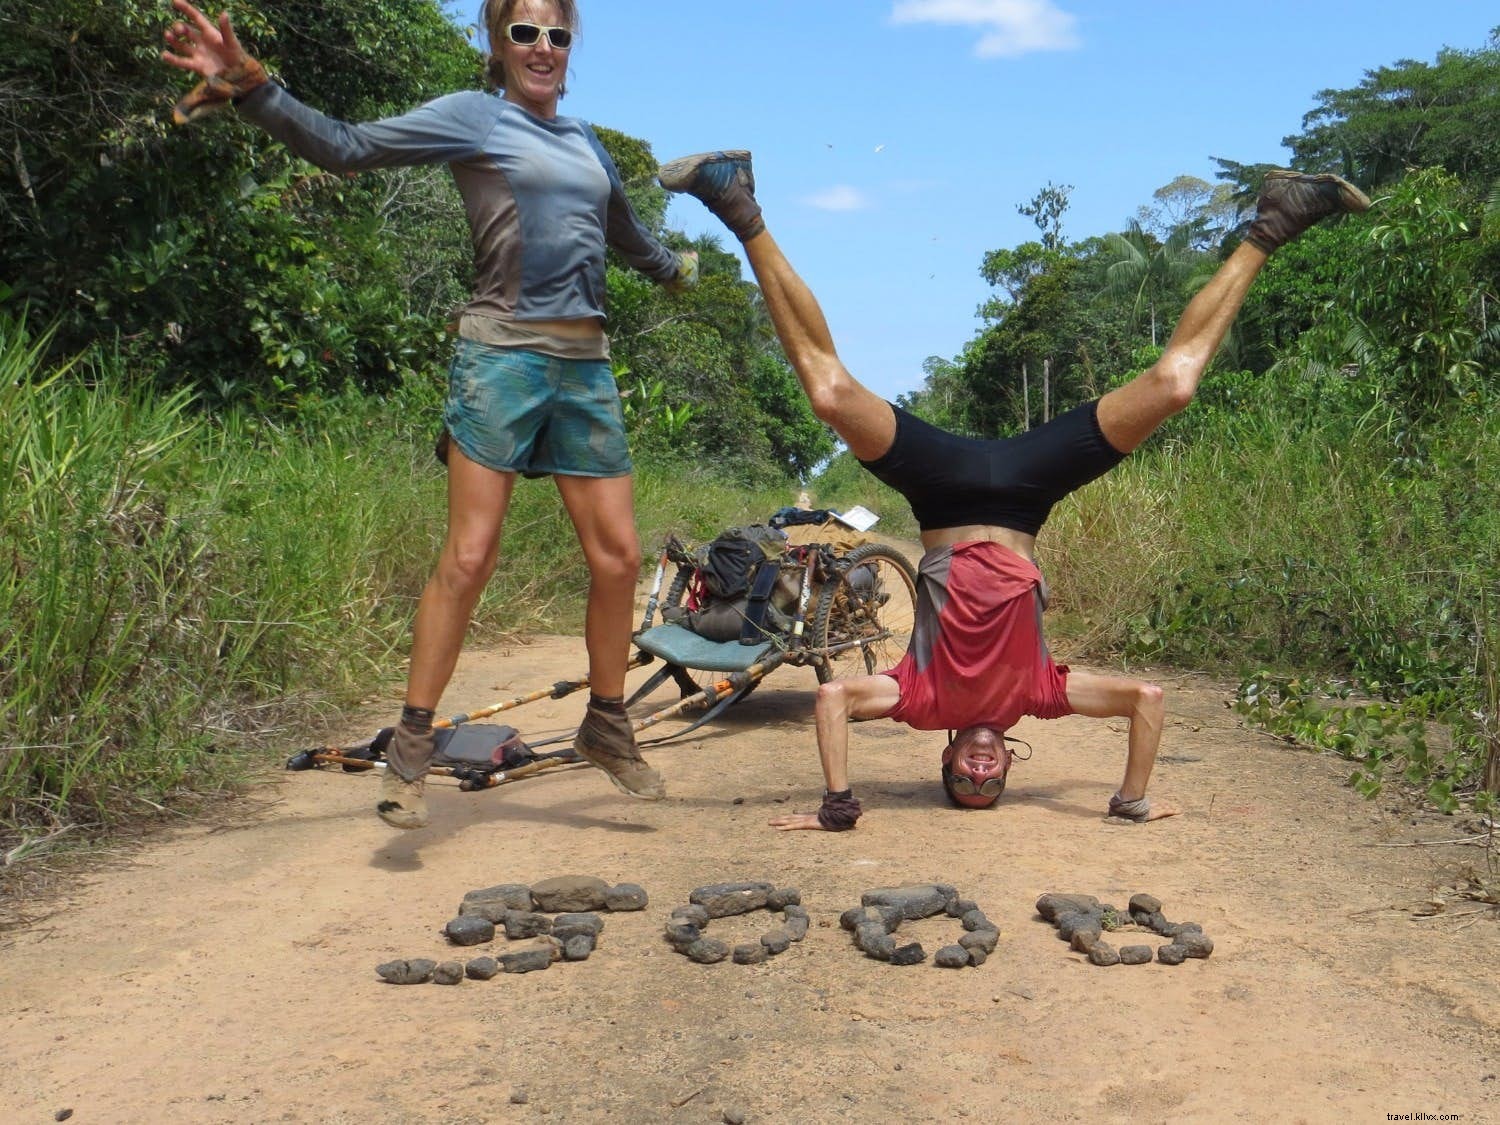  La existencia más hermosa y simple :una pareja comparte su experiencia de correr 5000 millas a través de América del Sur 